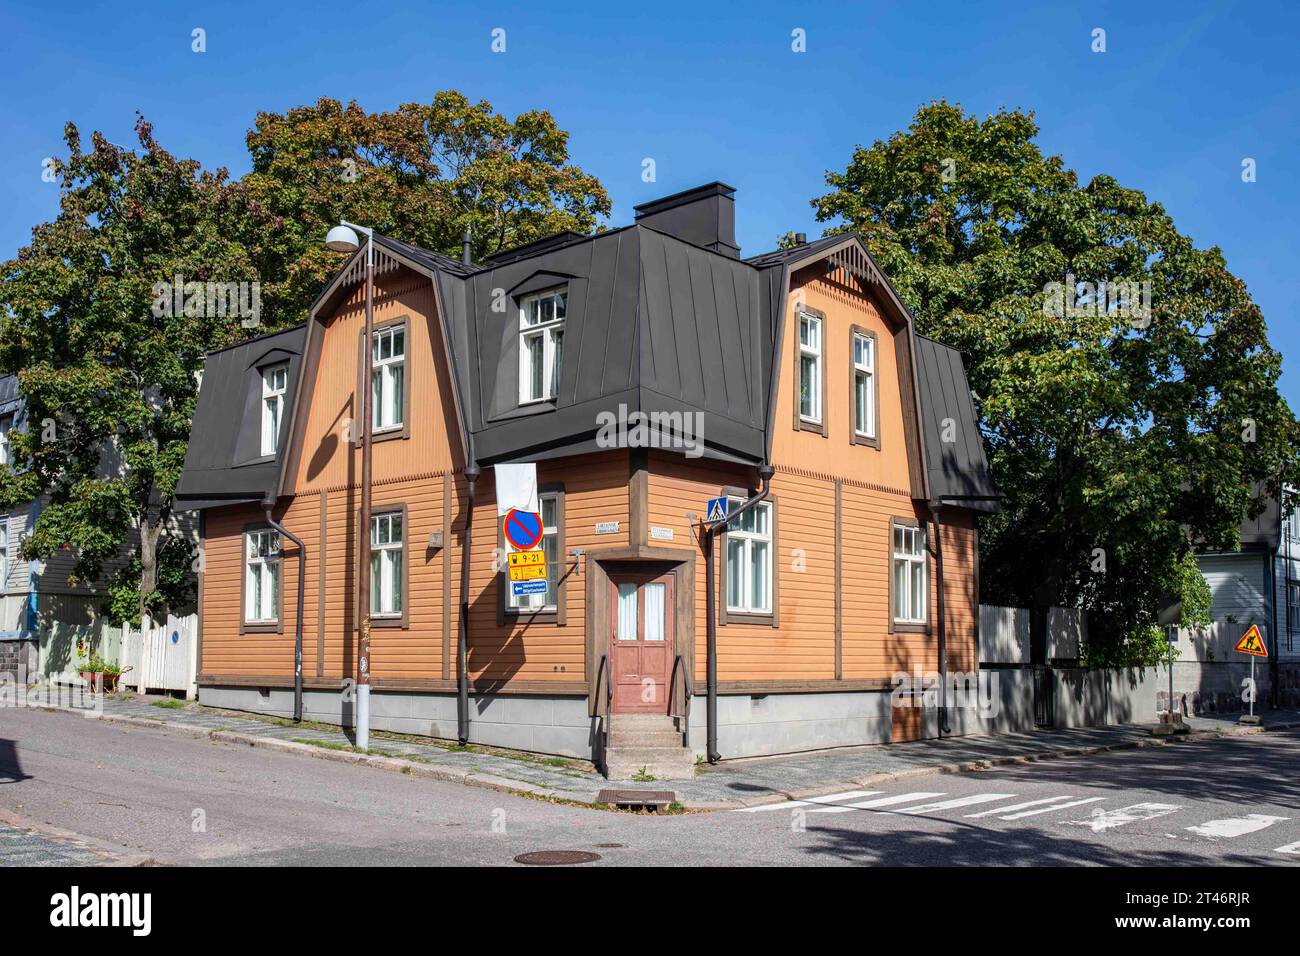 Immeuble résidentiel en bois à l'angle de Suvannontie et Virtaintie par une journée ensoleillée d'automne dans le quartier Puu-Vallilla d'Helsinki, Finlande Banque D'Images